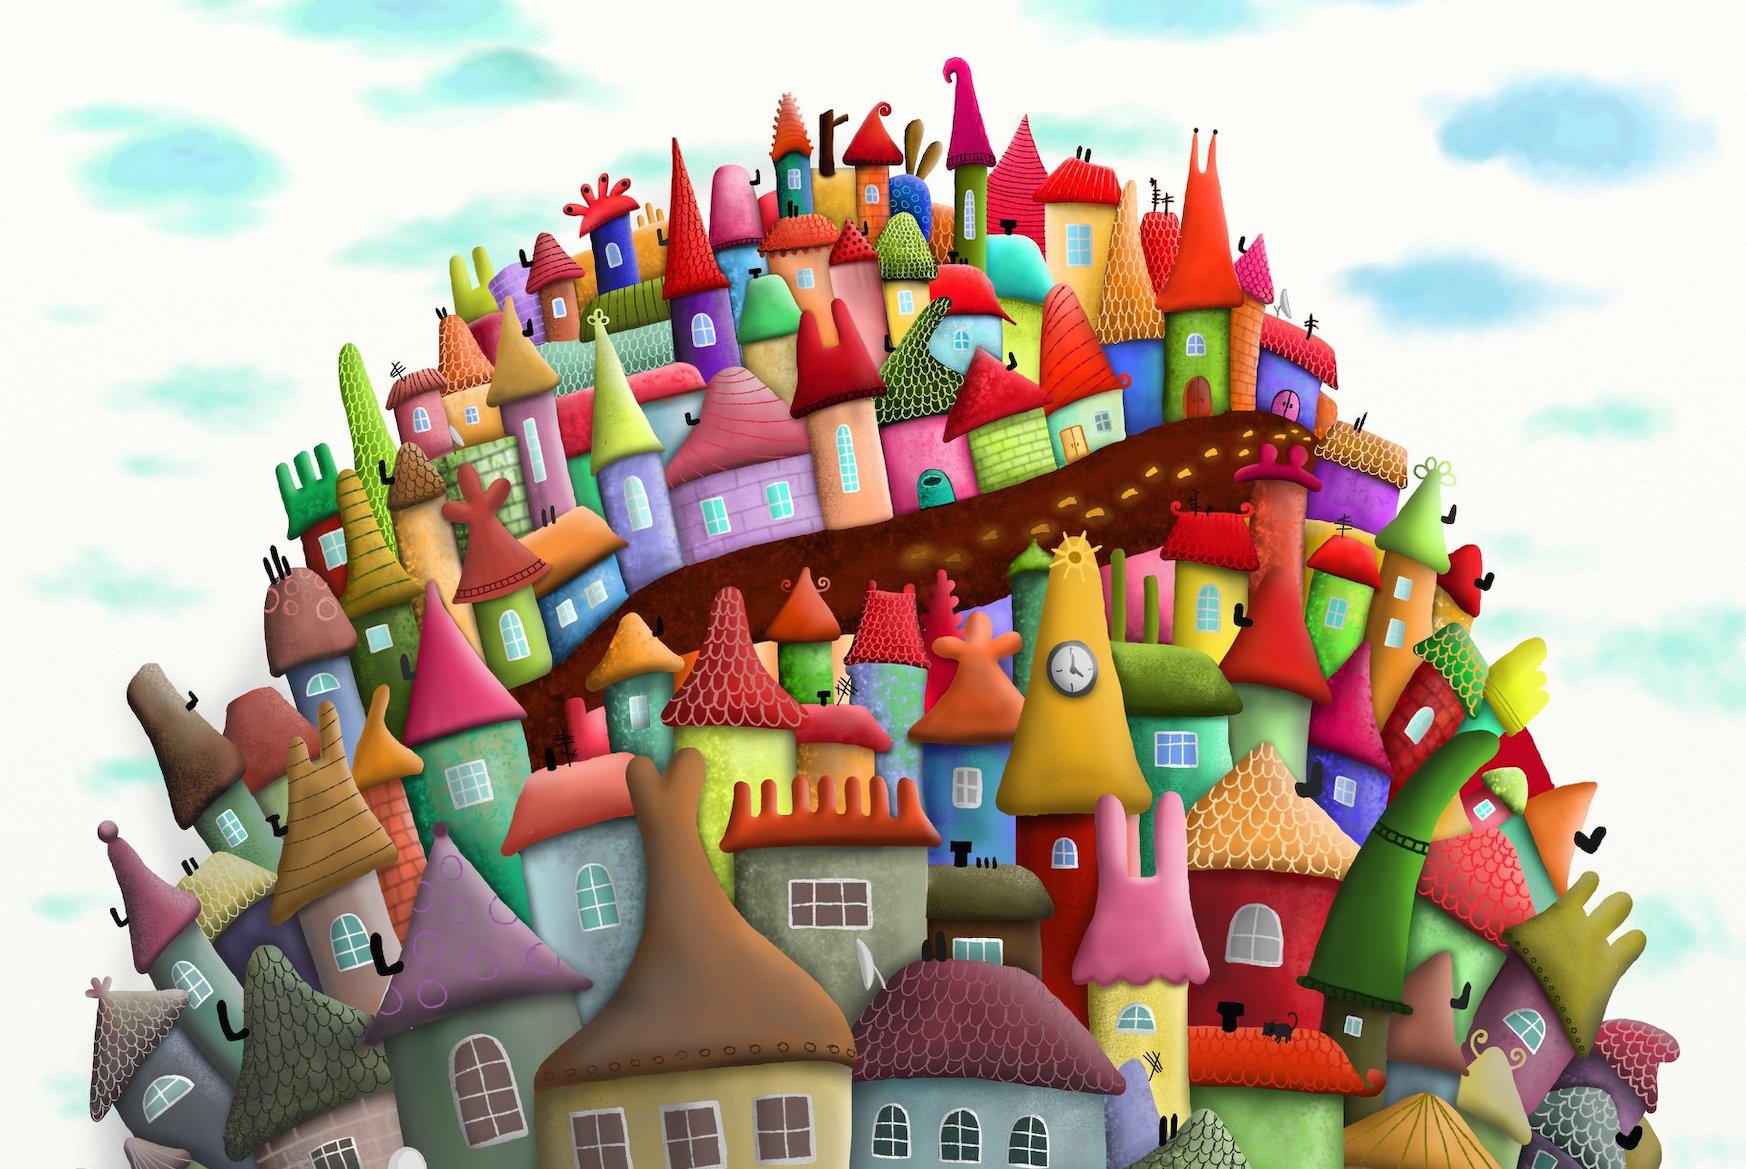 A brightly coloured cartoony cityscape